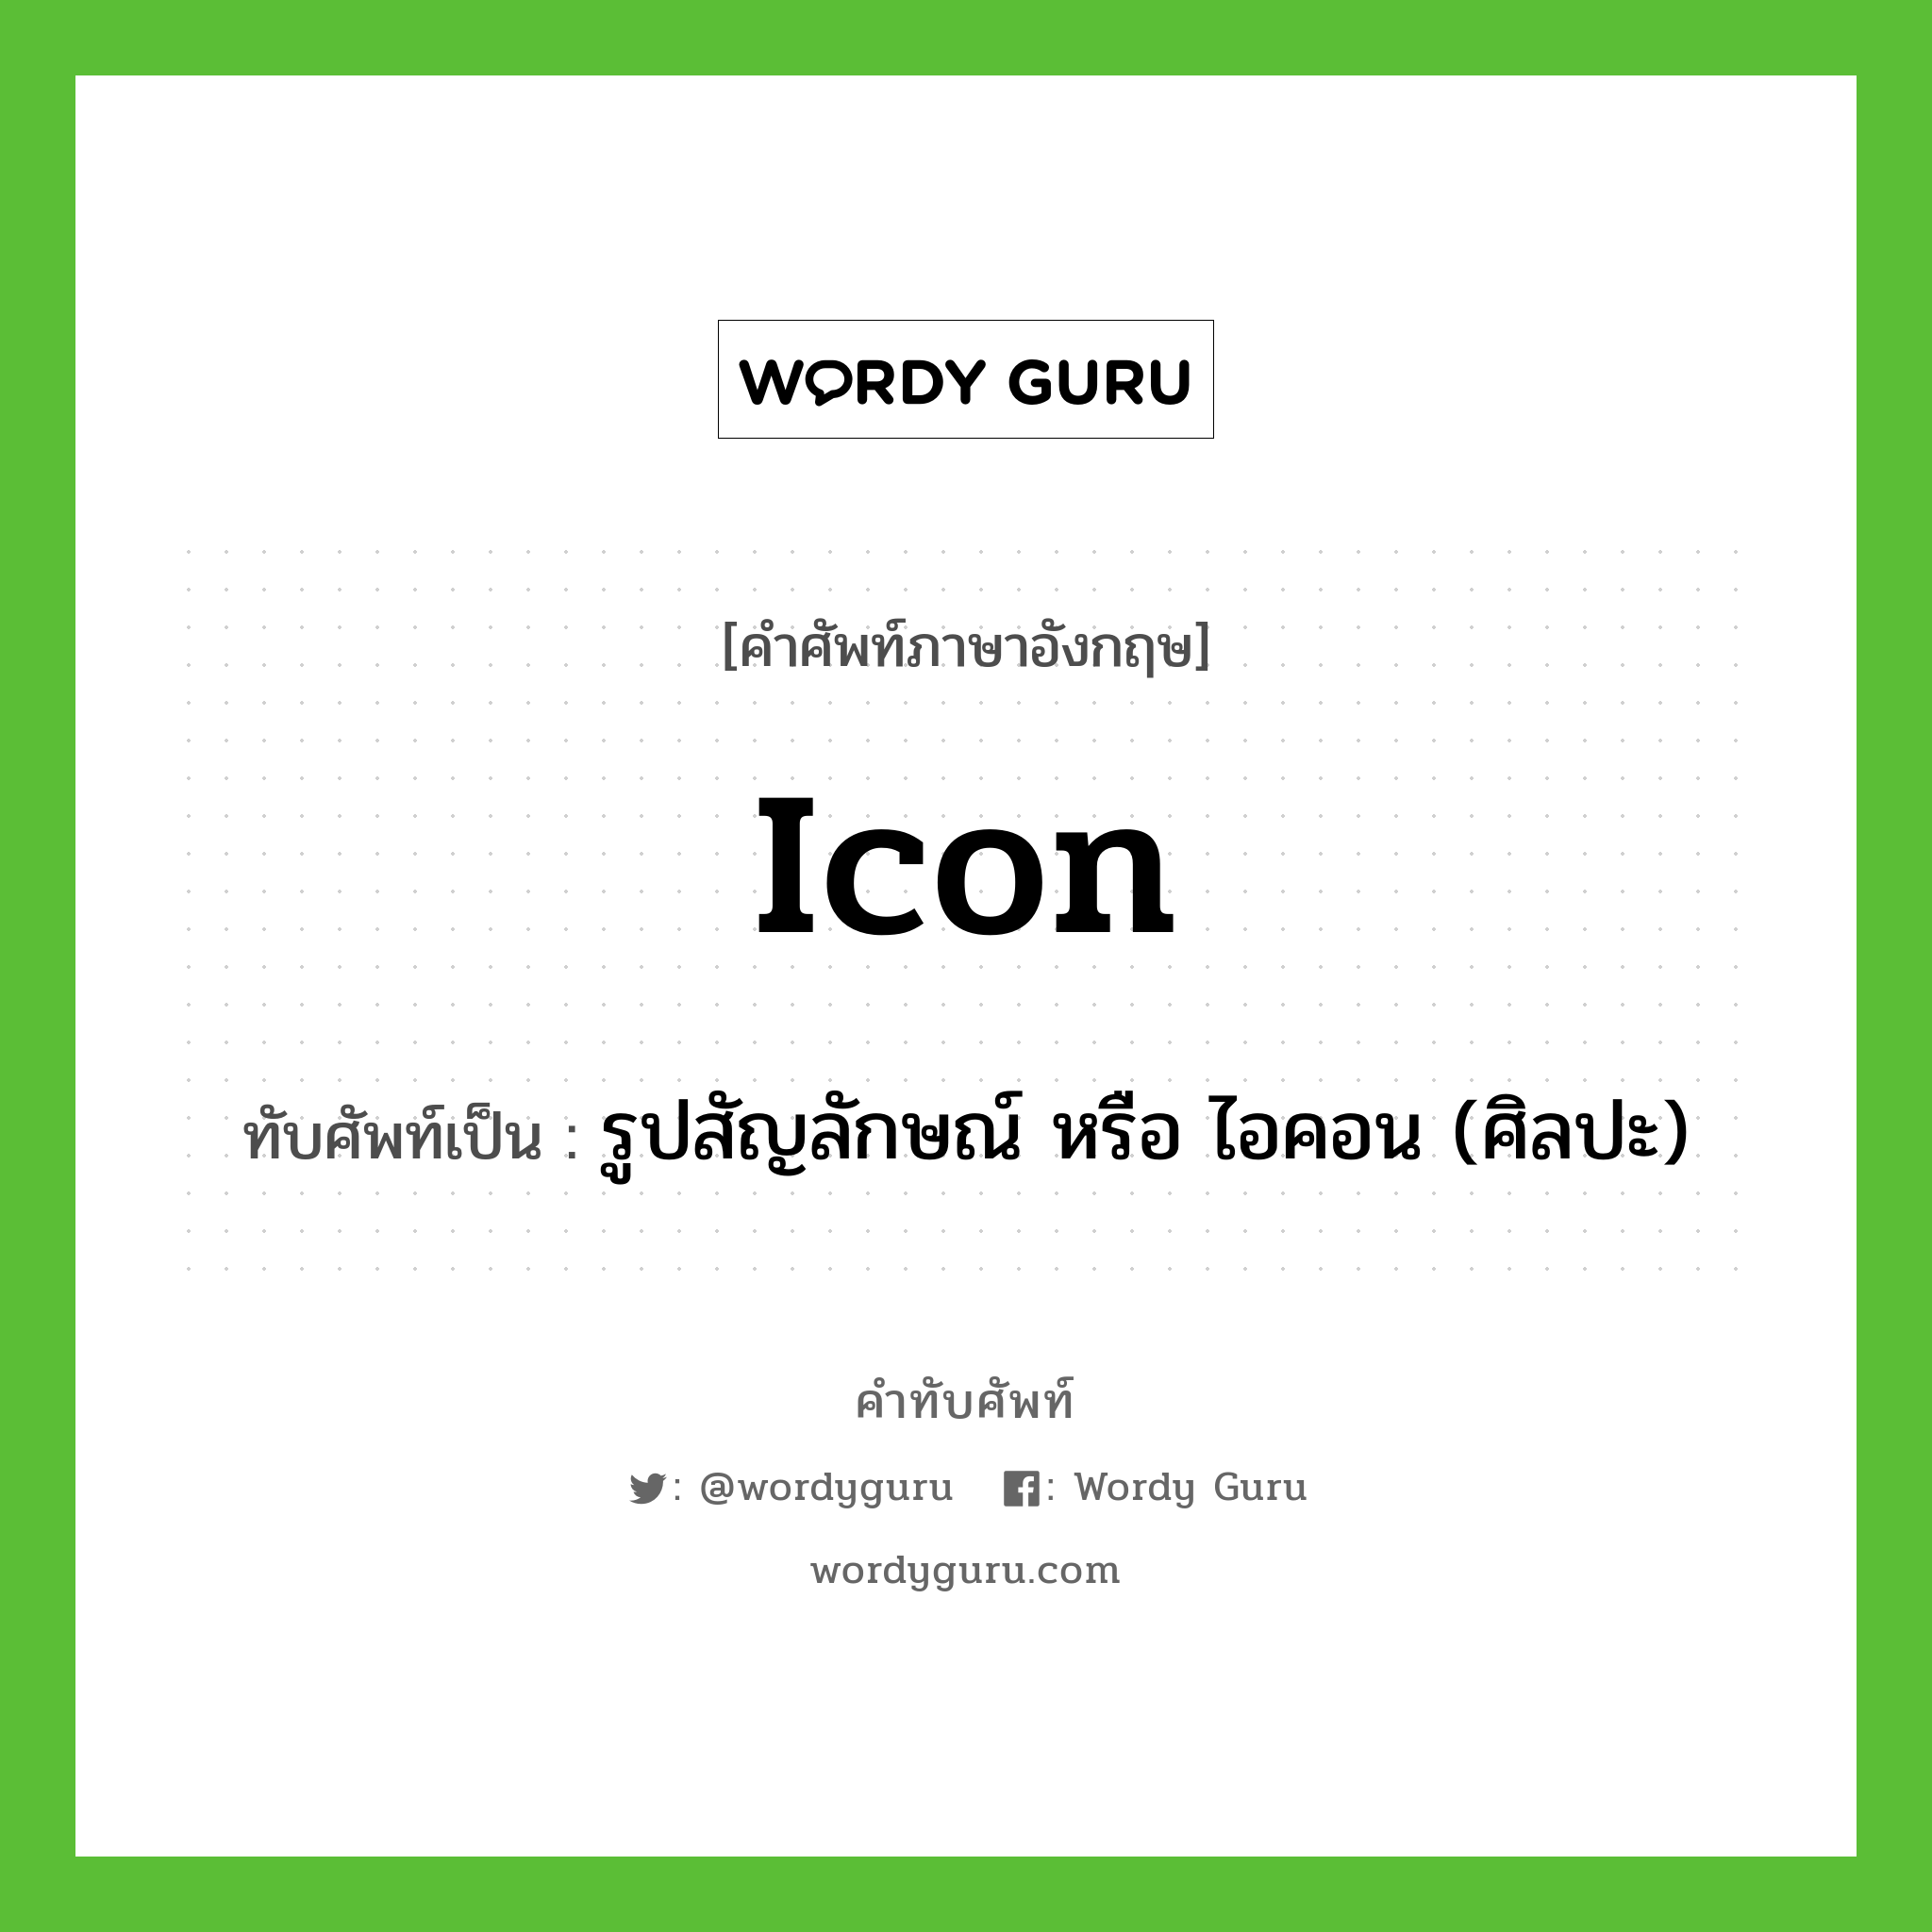 Icon เขียนเป็นคำไทยว่าอะไร?, คำศัพท์ภาษาอังกฤษ Icon ทับศัพท์เป็น รูปสัญลักษณ์ หรือ ไอคอน (ศิลปะ)